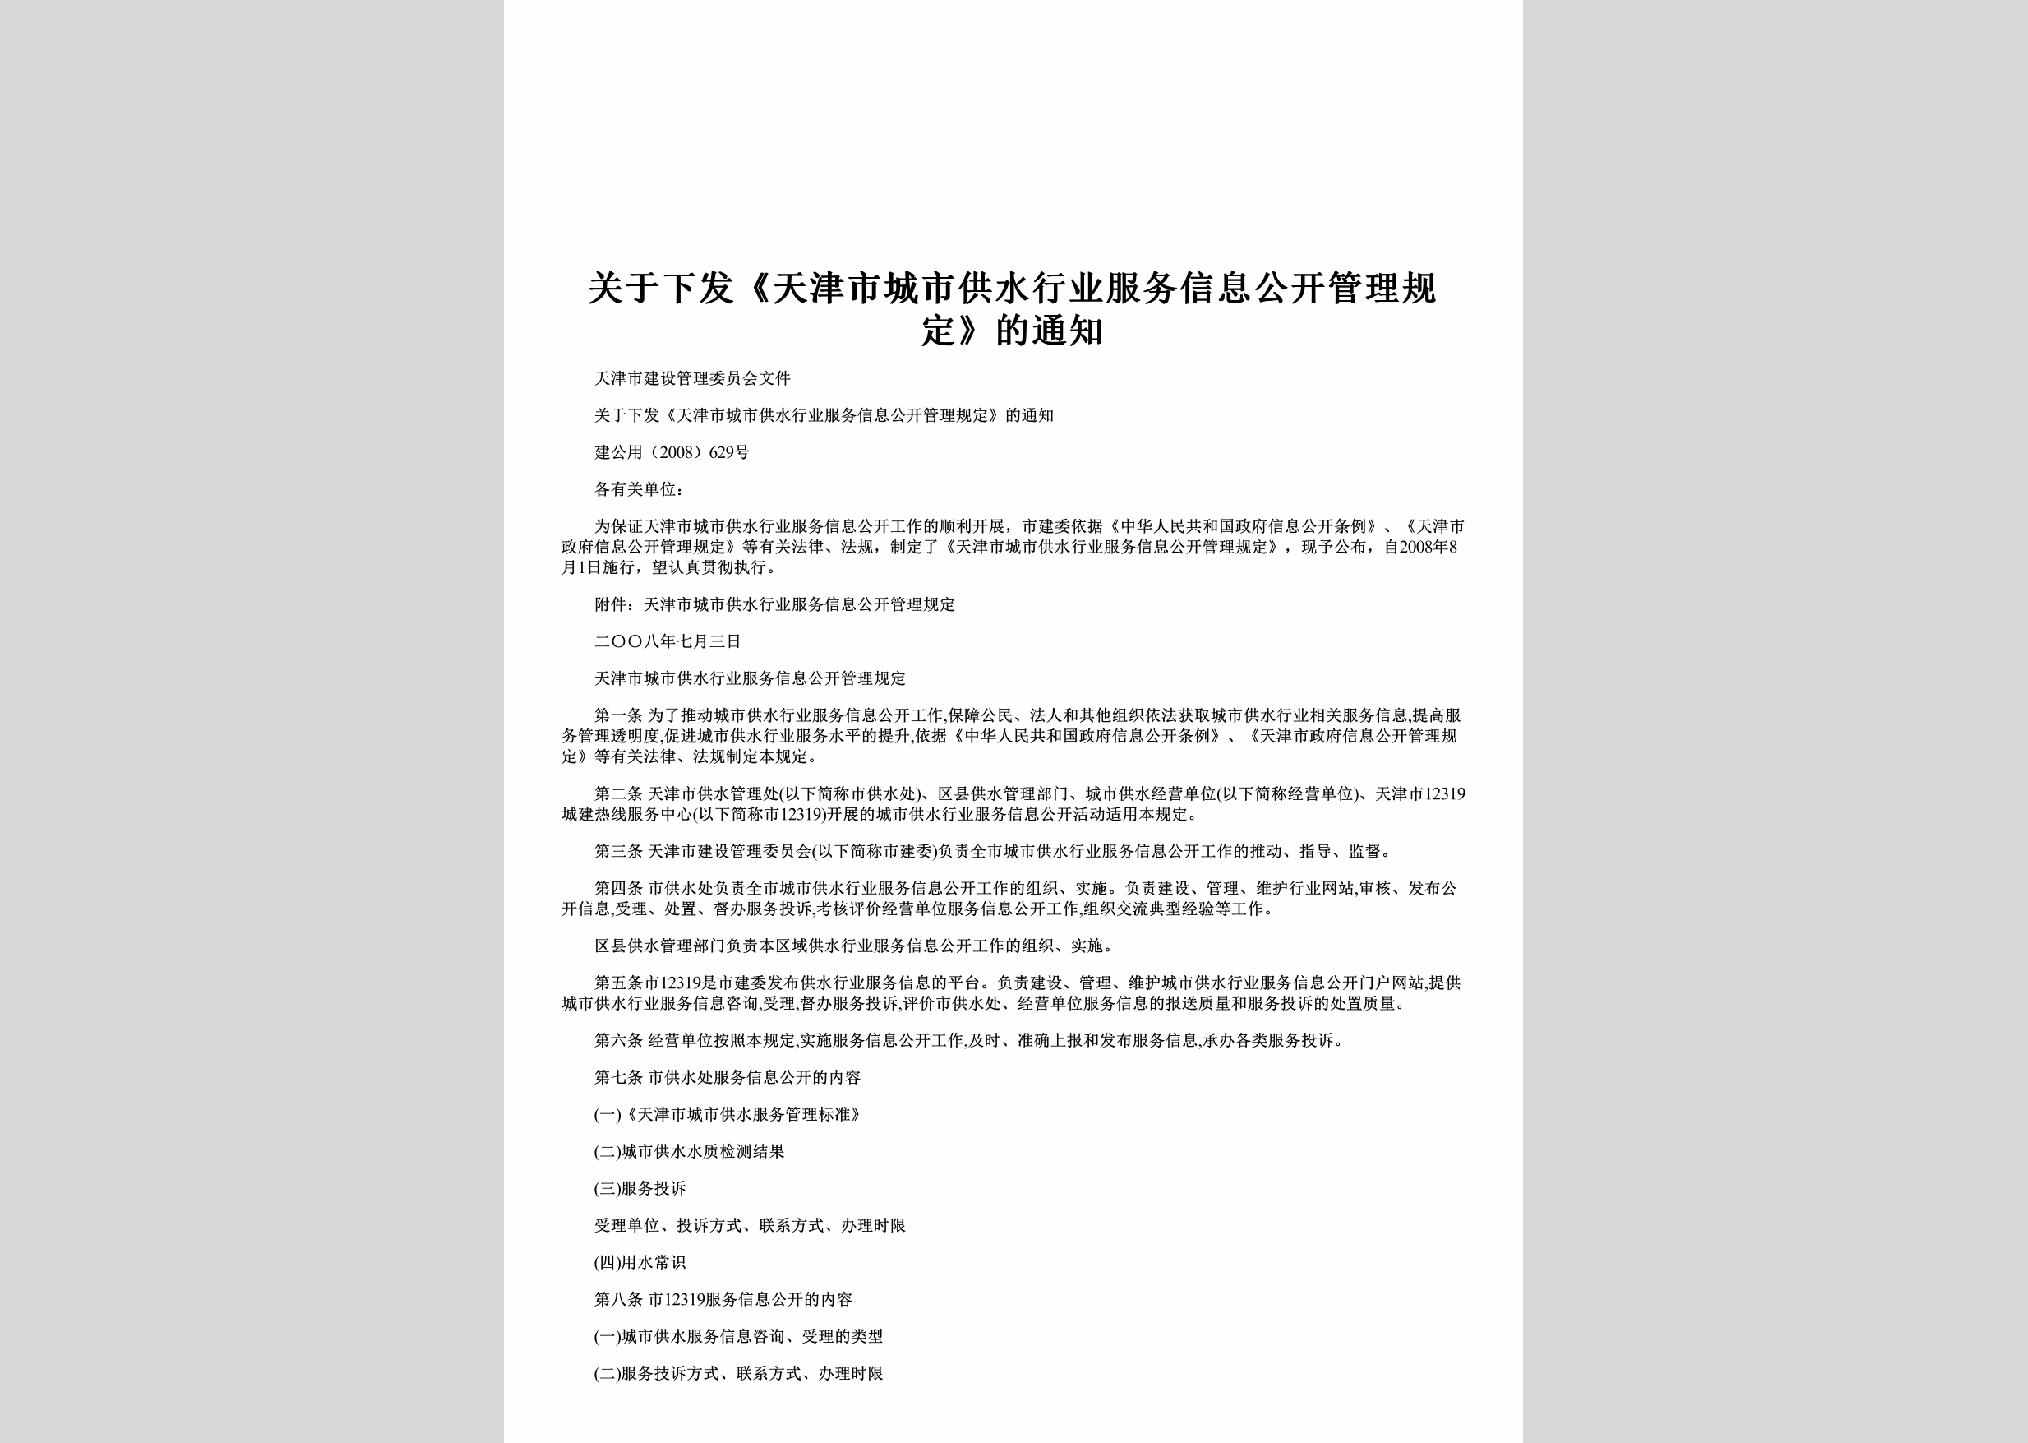 建公用[2008]629号：关于下发《天津市城市供水行业服务信息公开管理规定》的通知